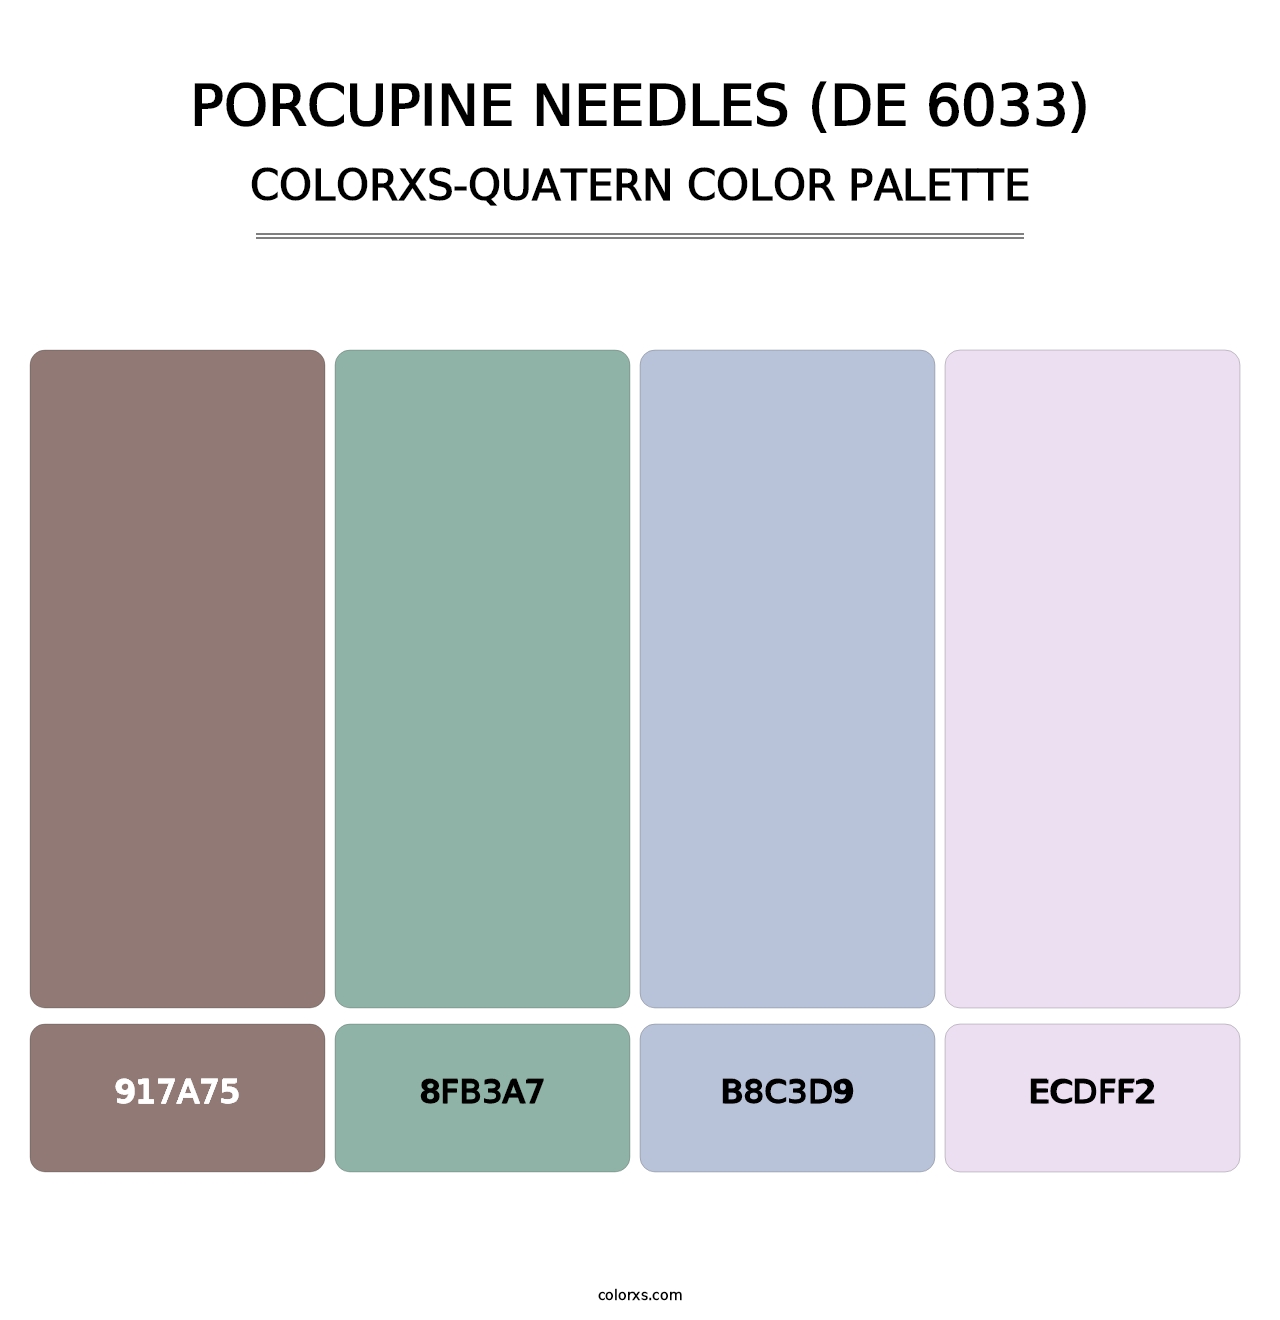 Porcupine Needles (DE 6033) - Colorxs Quatern Palette